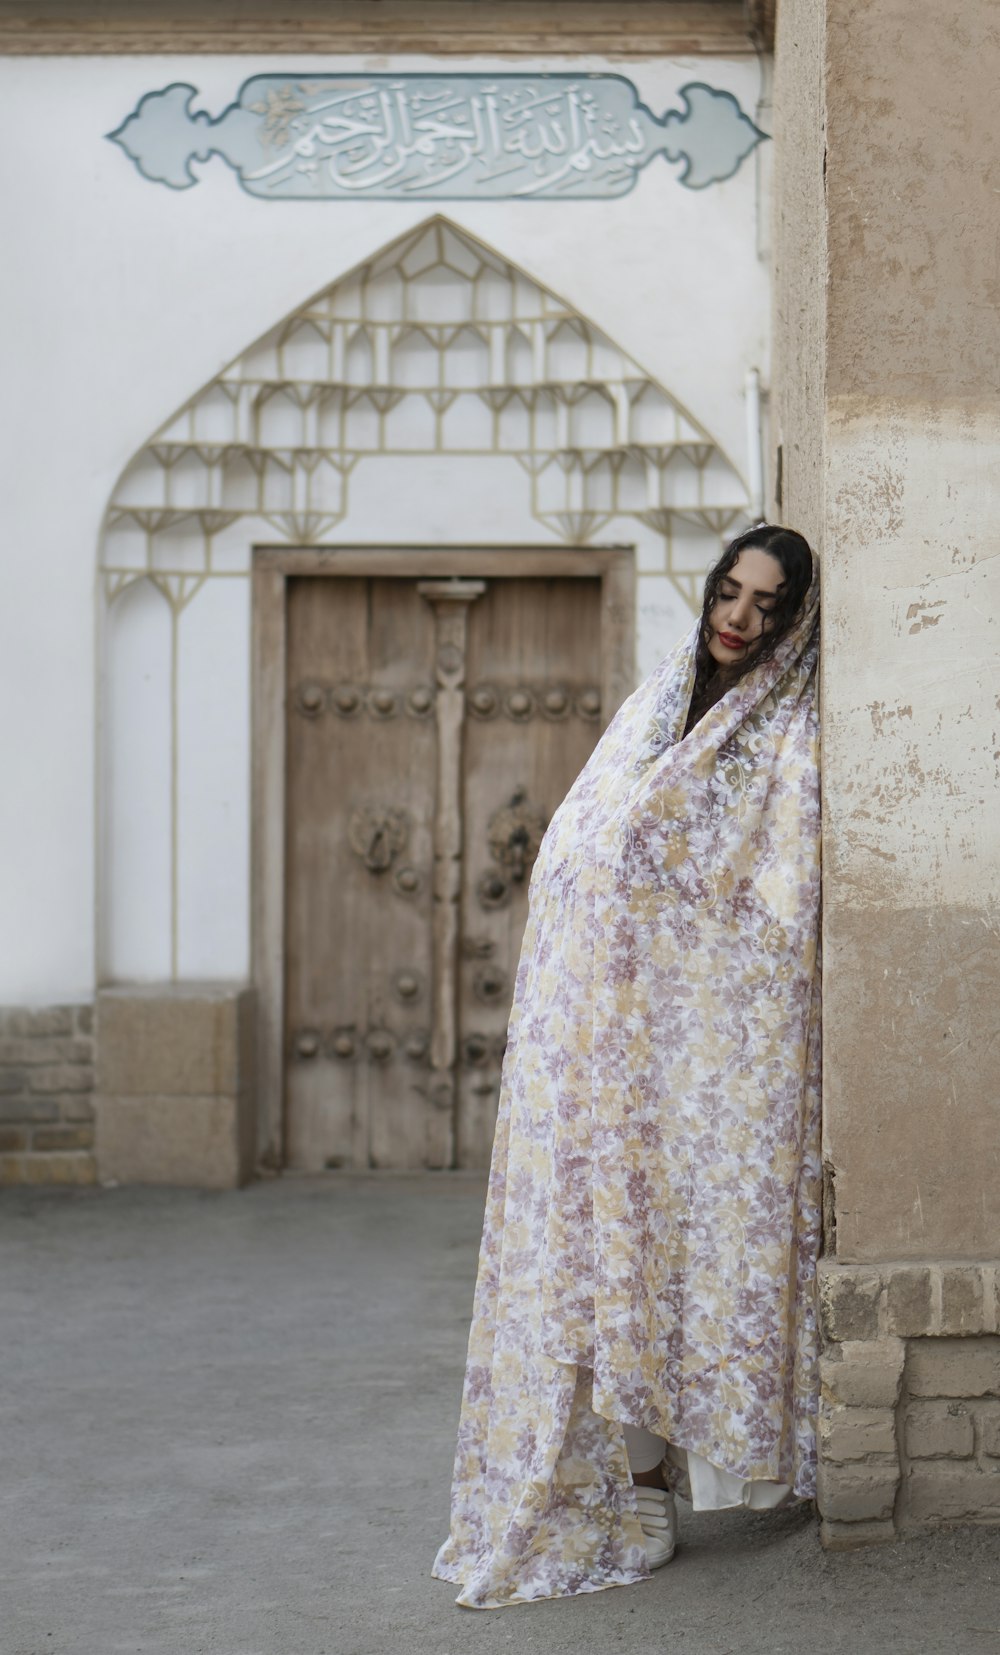 Frau in weißem und rosa geblümtem Hijab steht tagsüber in der Nähe einer grauen Betonwand